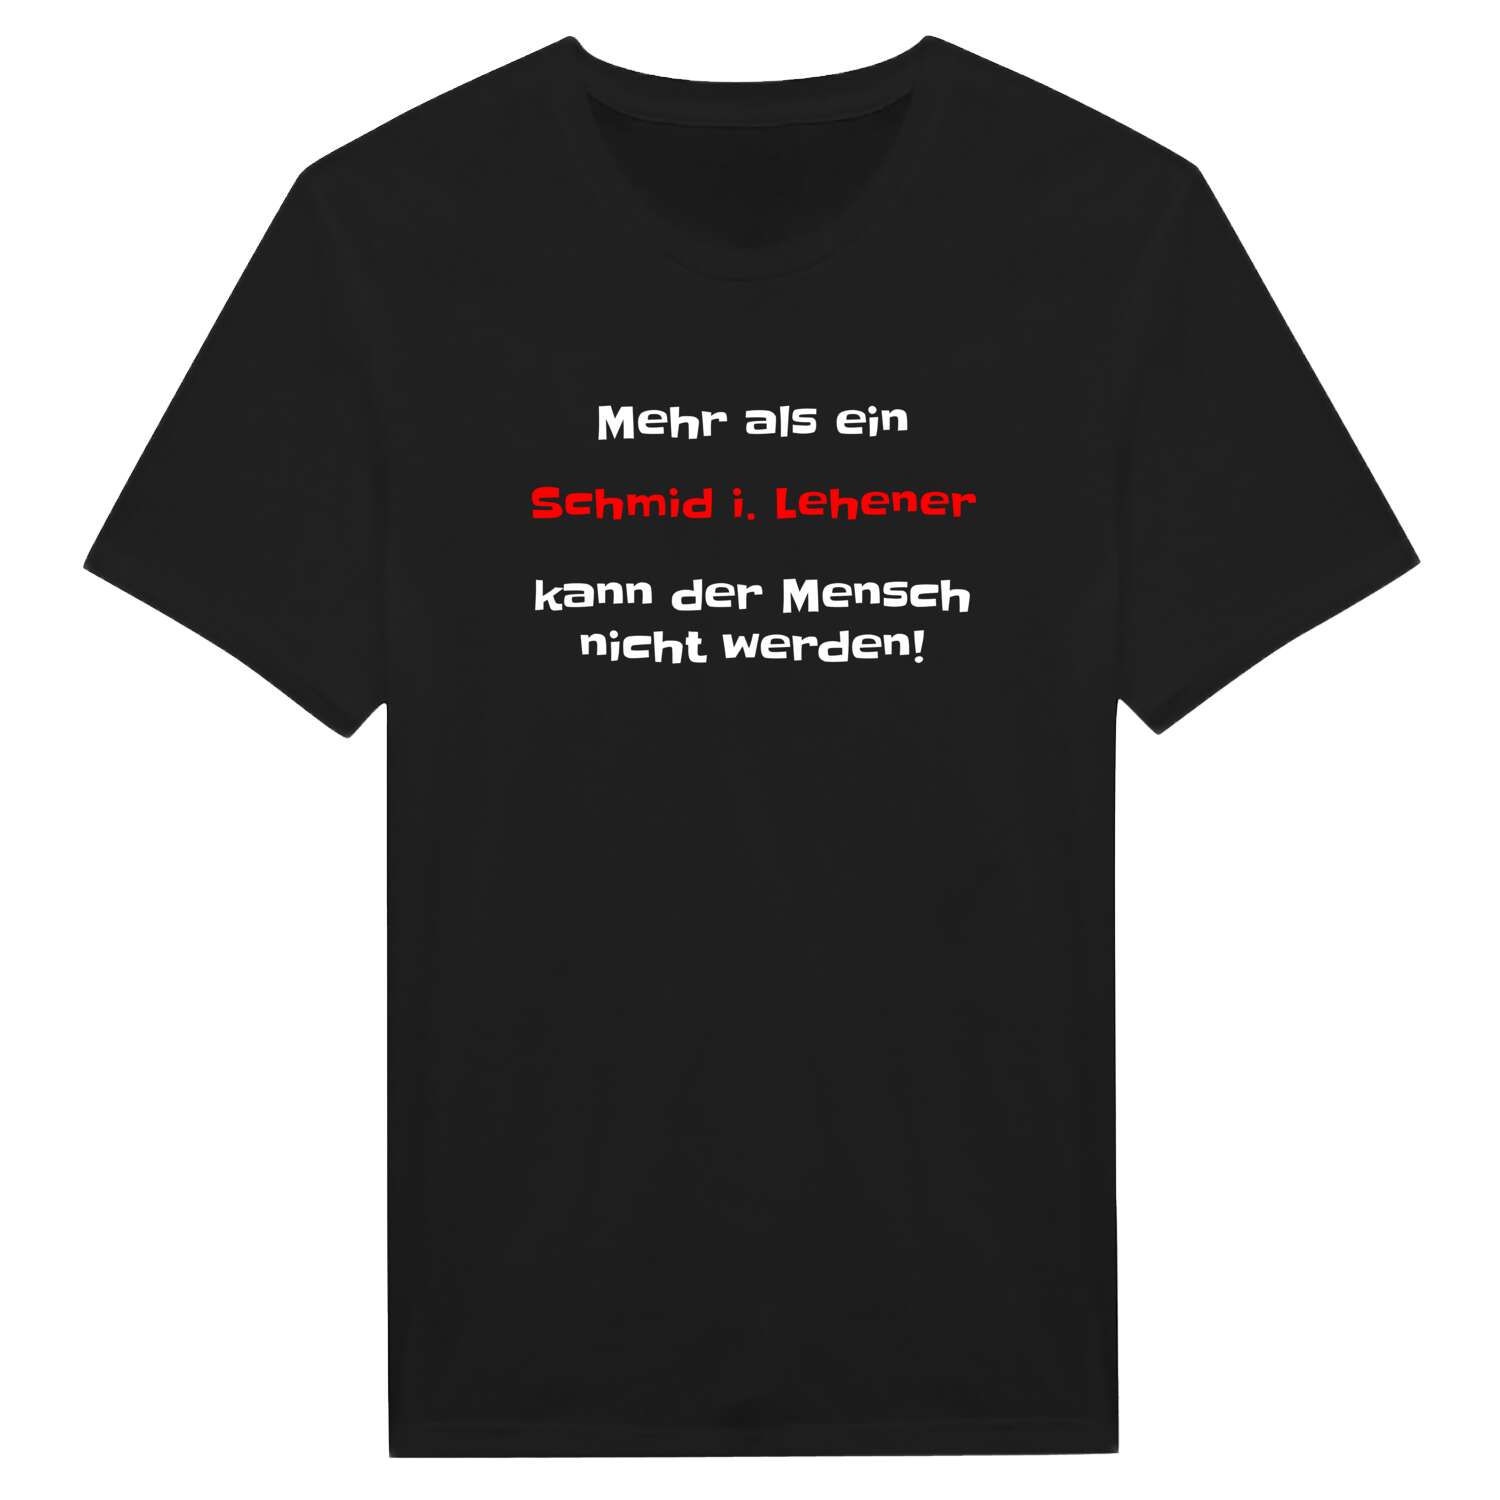 Schmid i. Lehen T-Shirt »Mehr als ein«